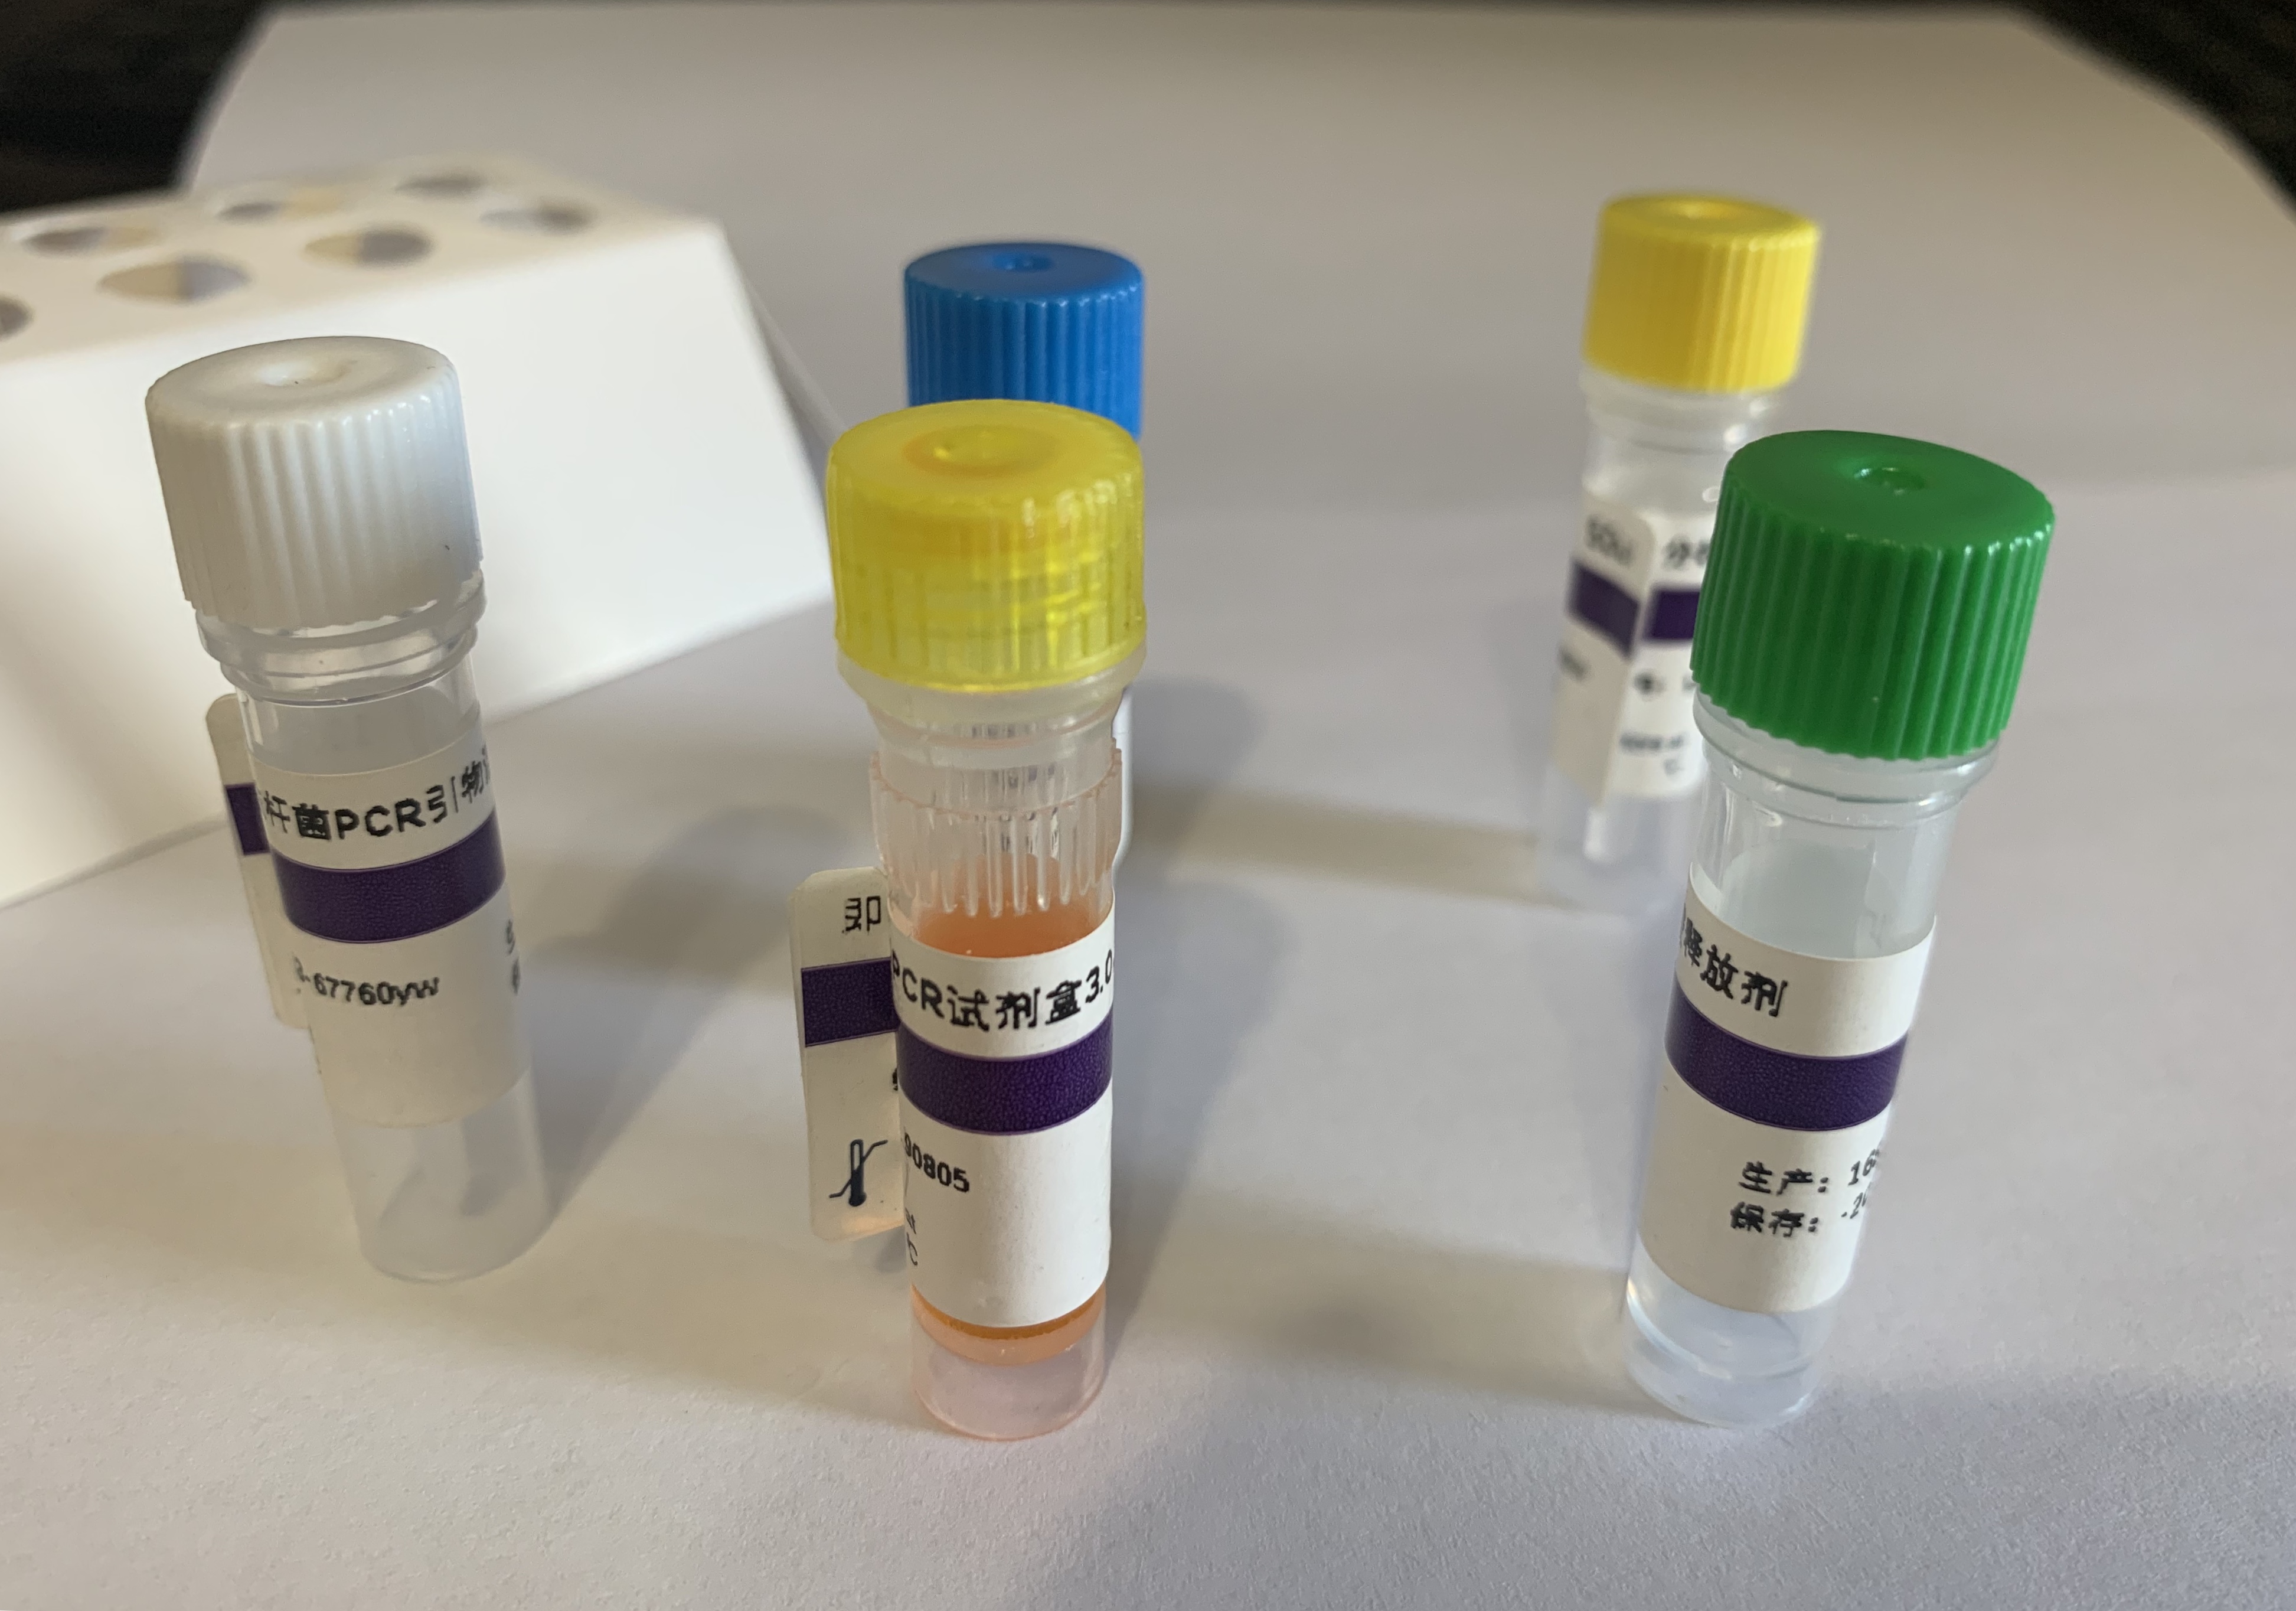 松材线虫染料法荧光定量PCR试剂盒